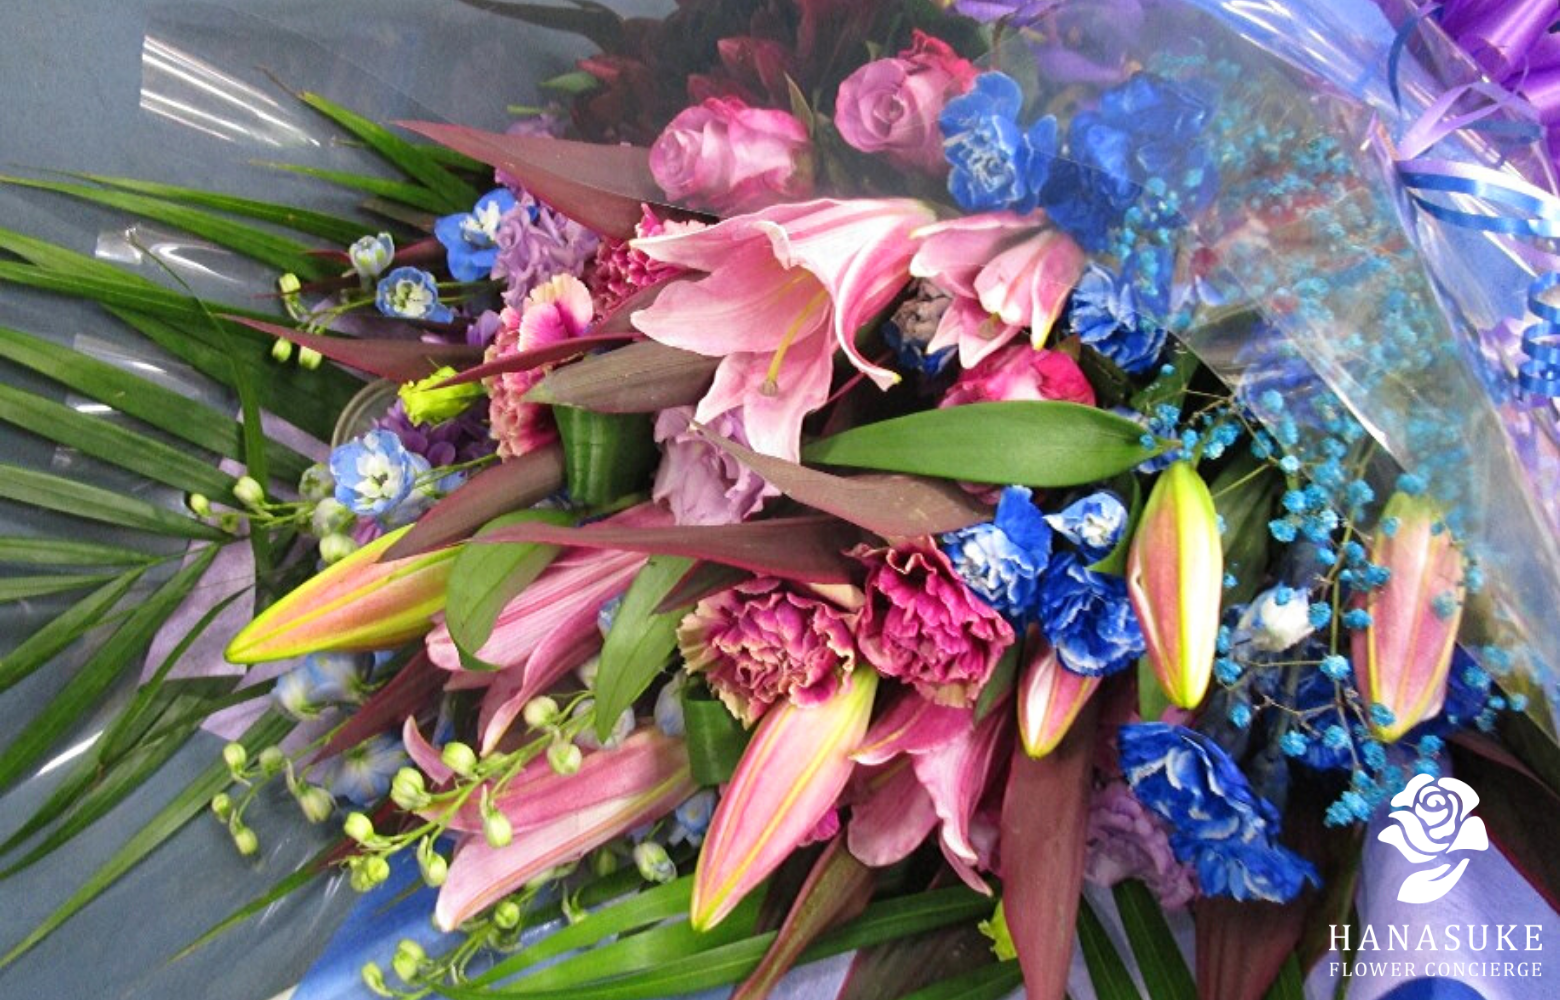 成人式 成人祝いに贈るお祝い花の選び方とおすすめギフト 花助 ビジネスに花を